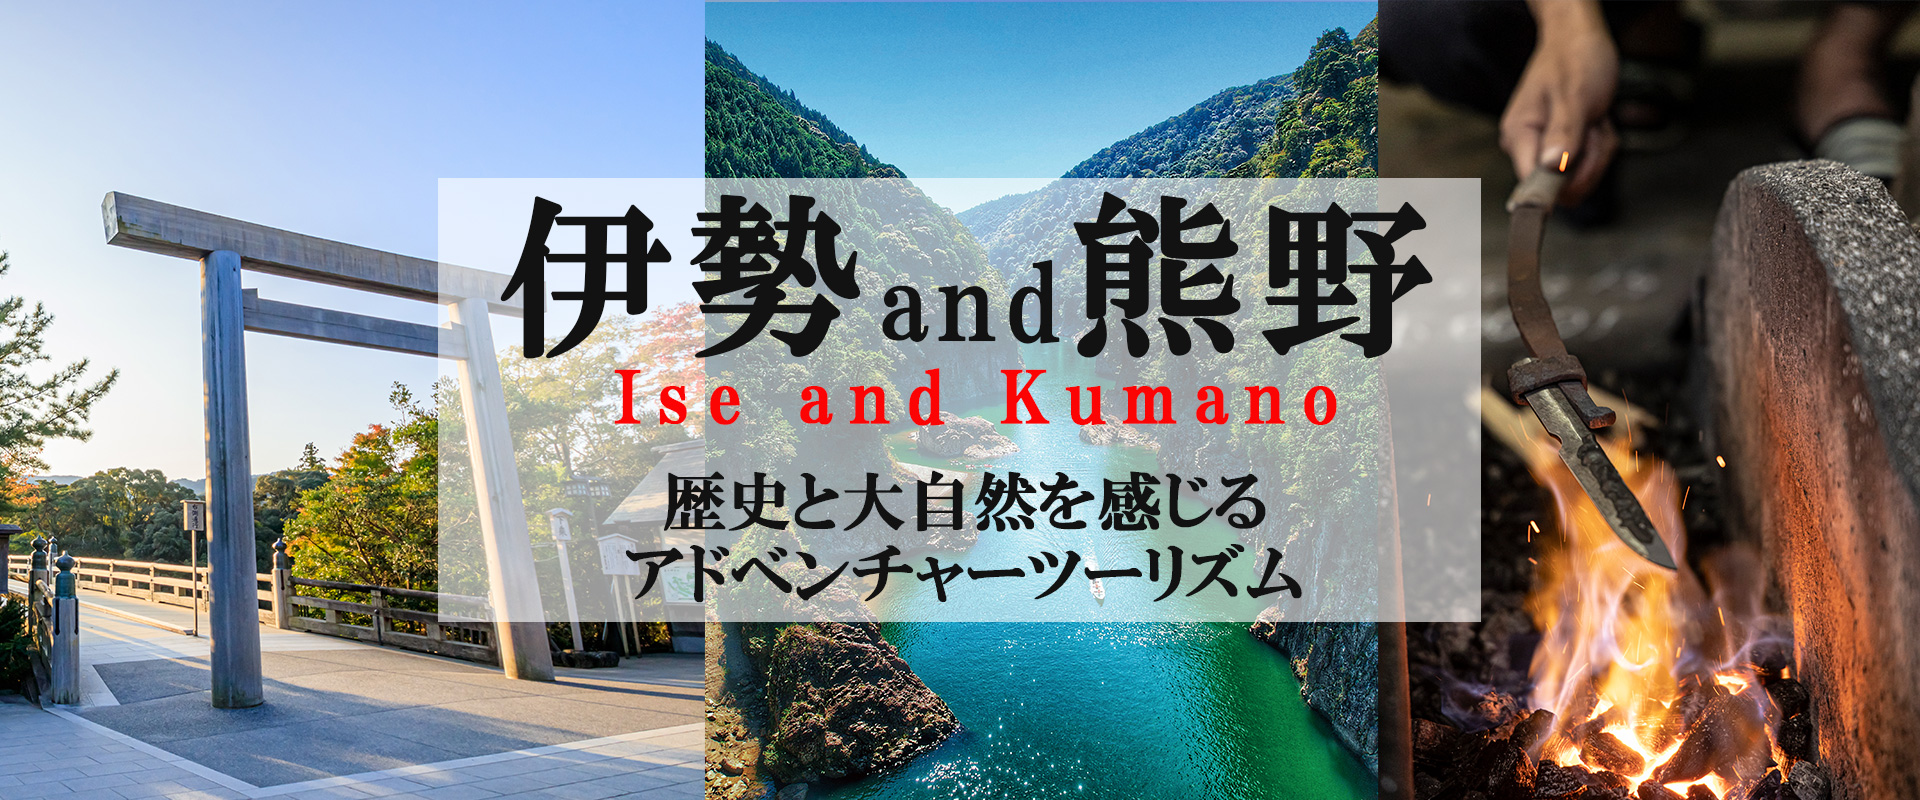 伊勢and熊野、歴史と大自然を感じるアドベンチャーツーリズム